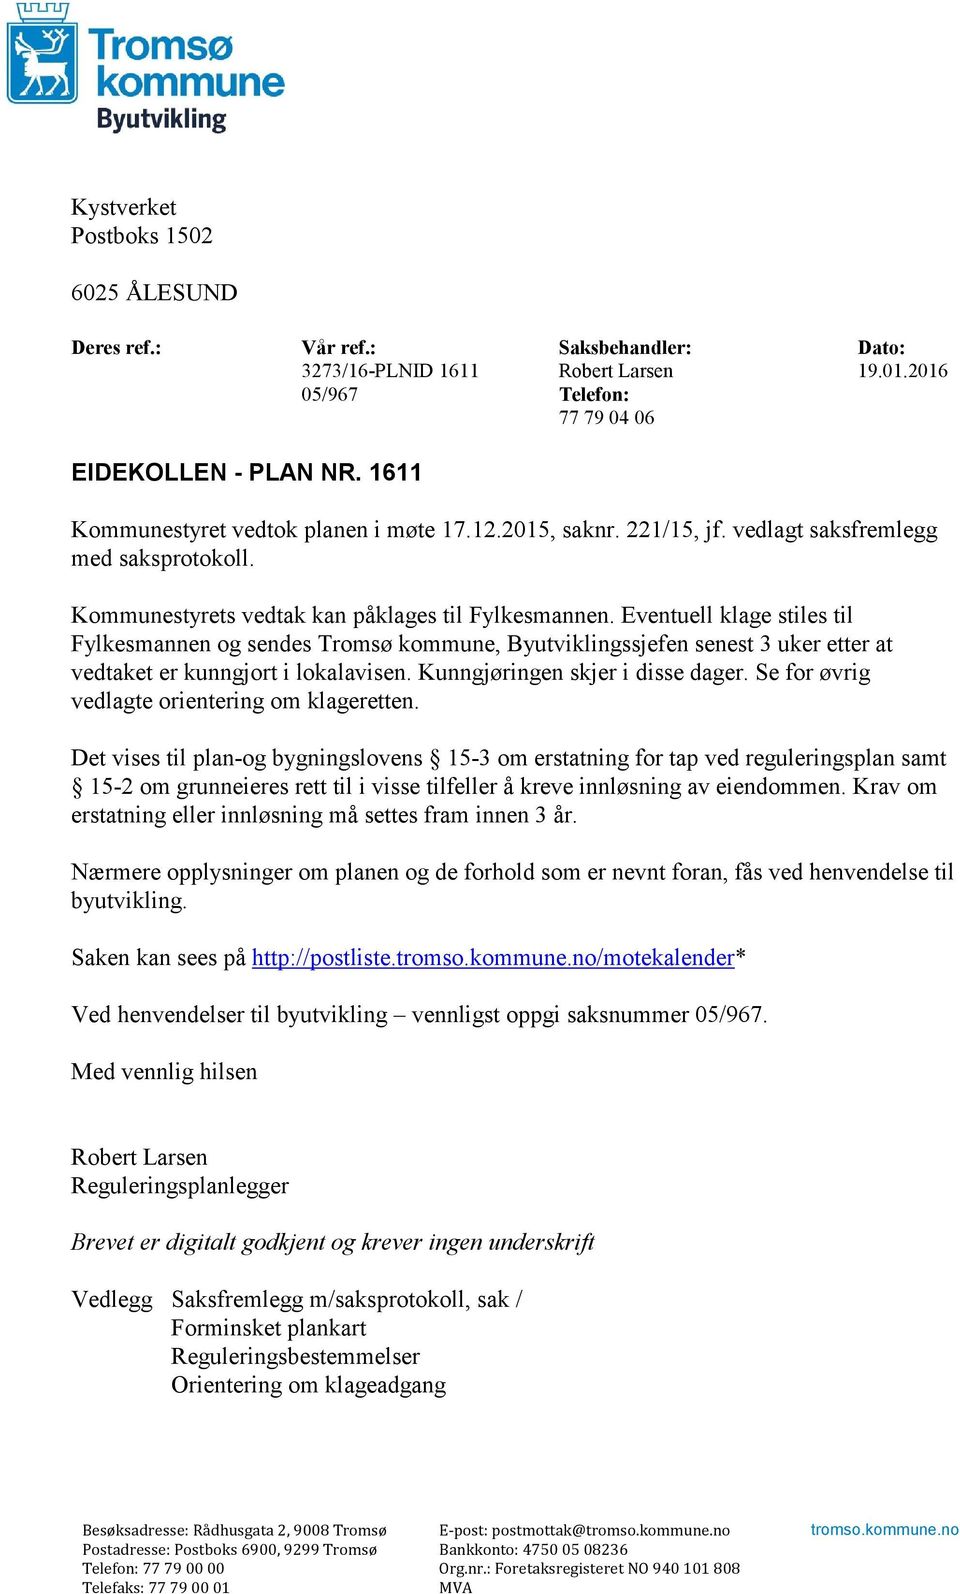 Eventuell klage stiles til Fylkesmannen og sendes Tromsø kommune, Byutviklingssjefen senest 3 uker etter at vedtaket er kunngjort i lokalavisen. Kunngjøringen skjer i disse dager.